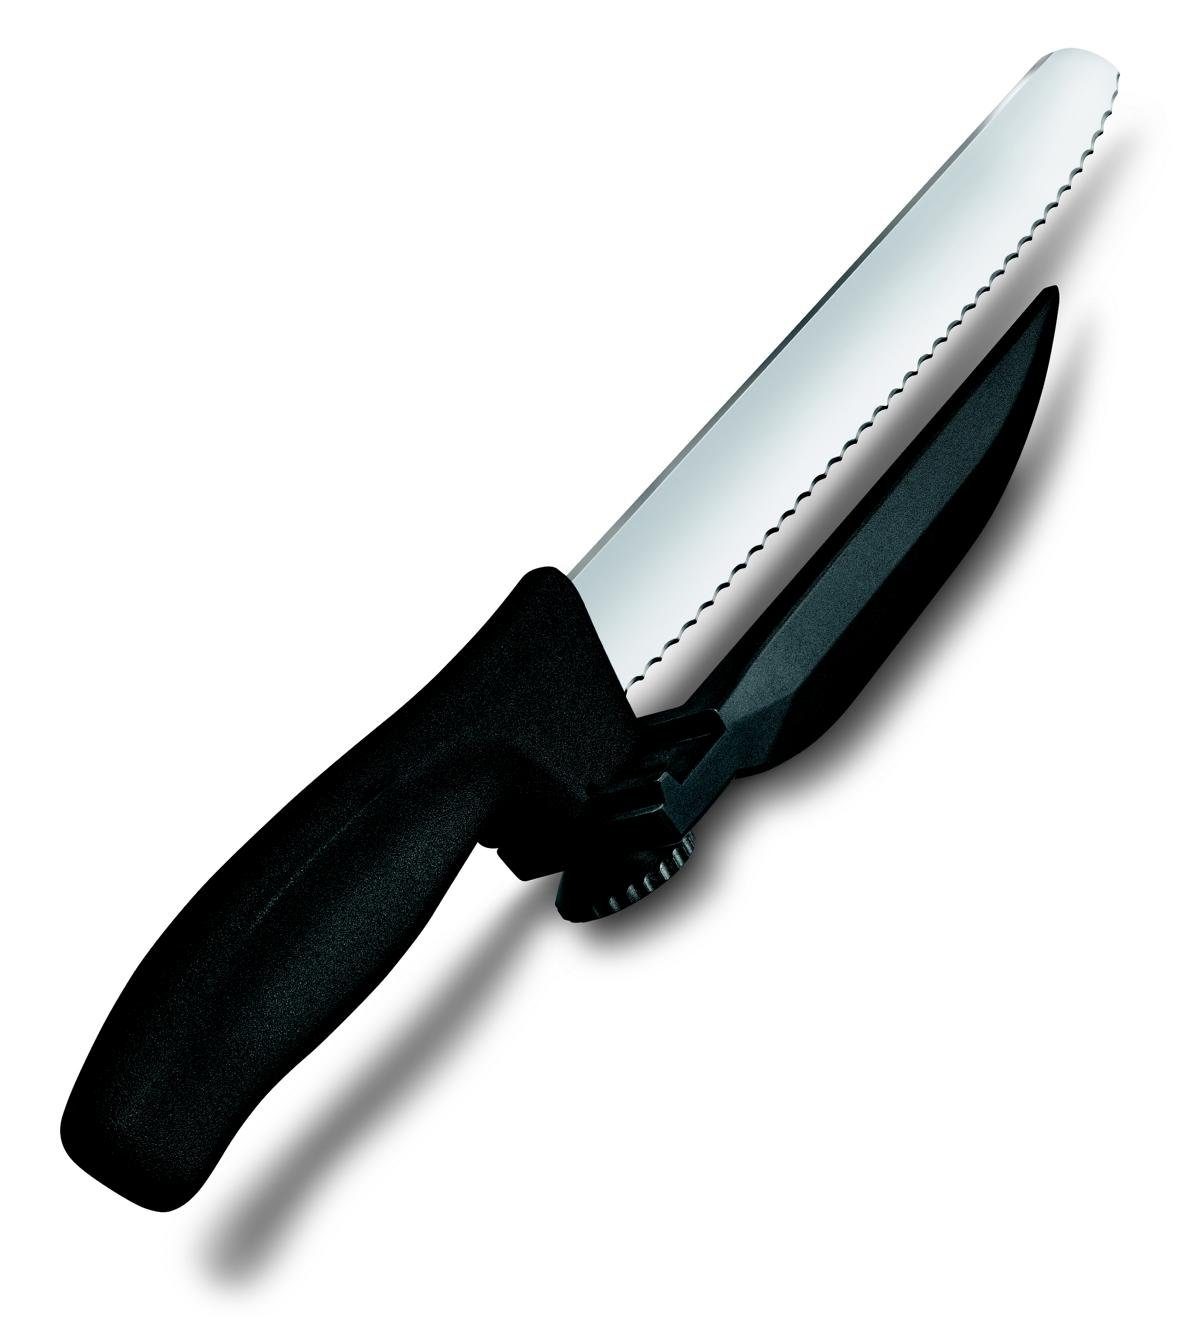 schwarz Wellenschliff, Taschenmesser DUX-Messer, Classic Victorinox 21cm, Swiss